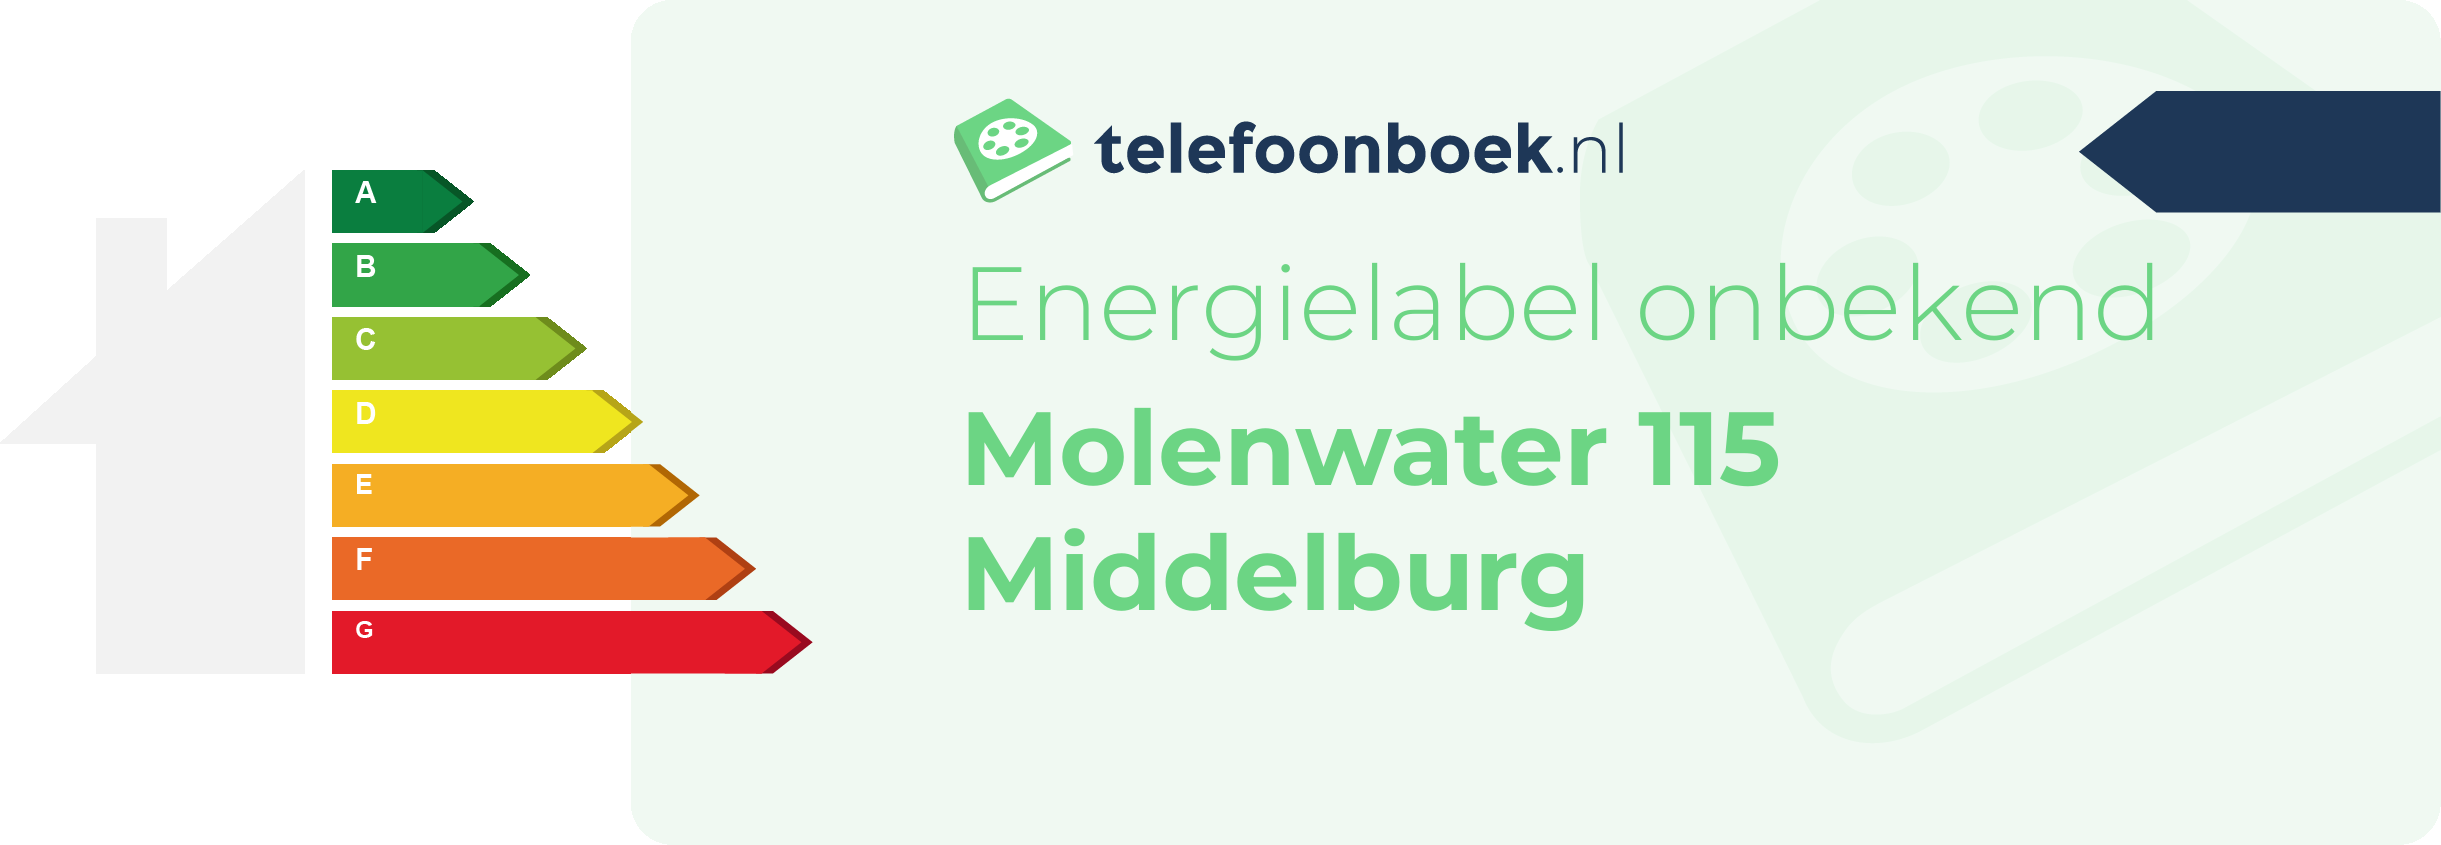 Energielabel Molenwater 115 Middelburg